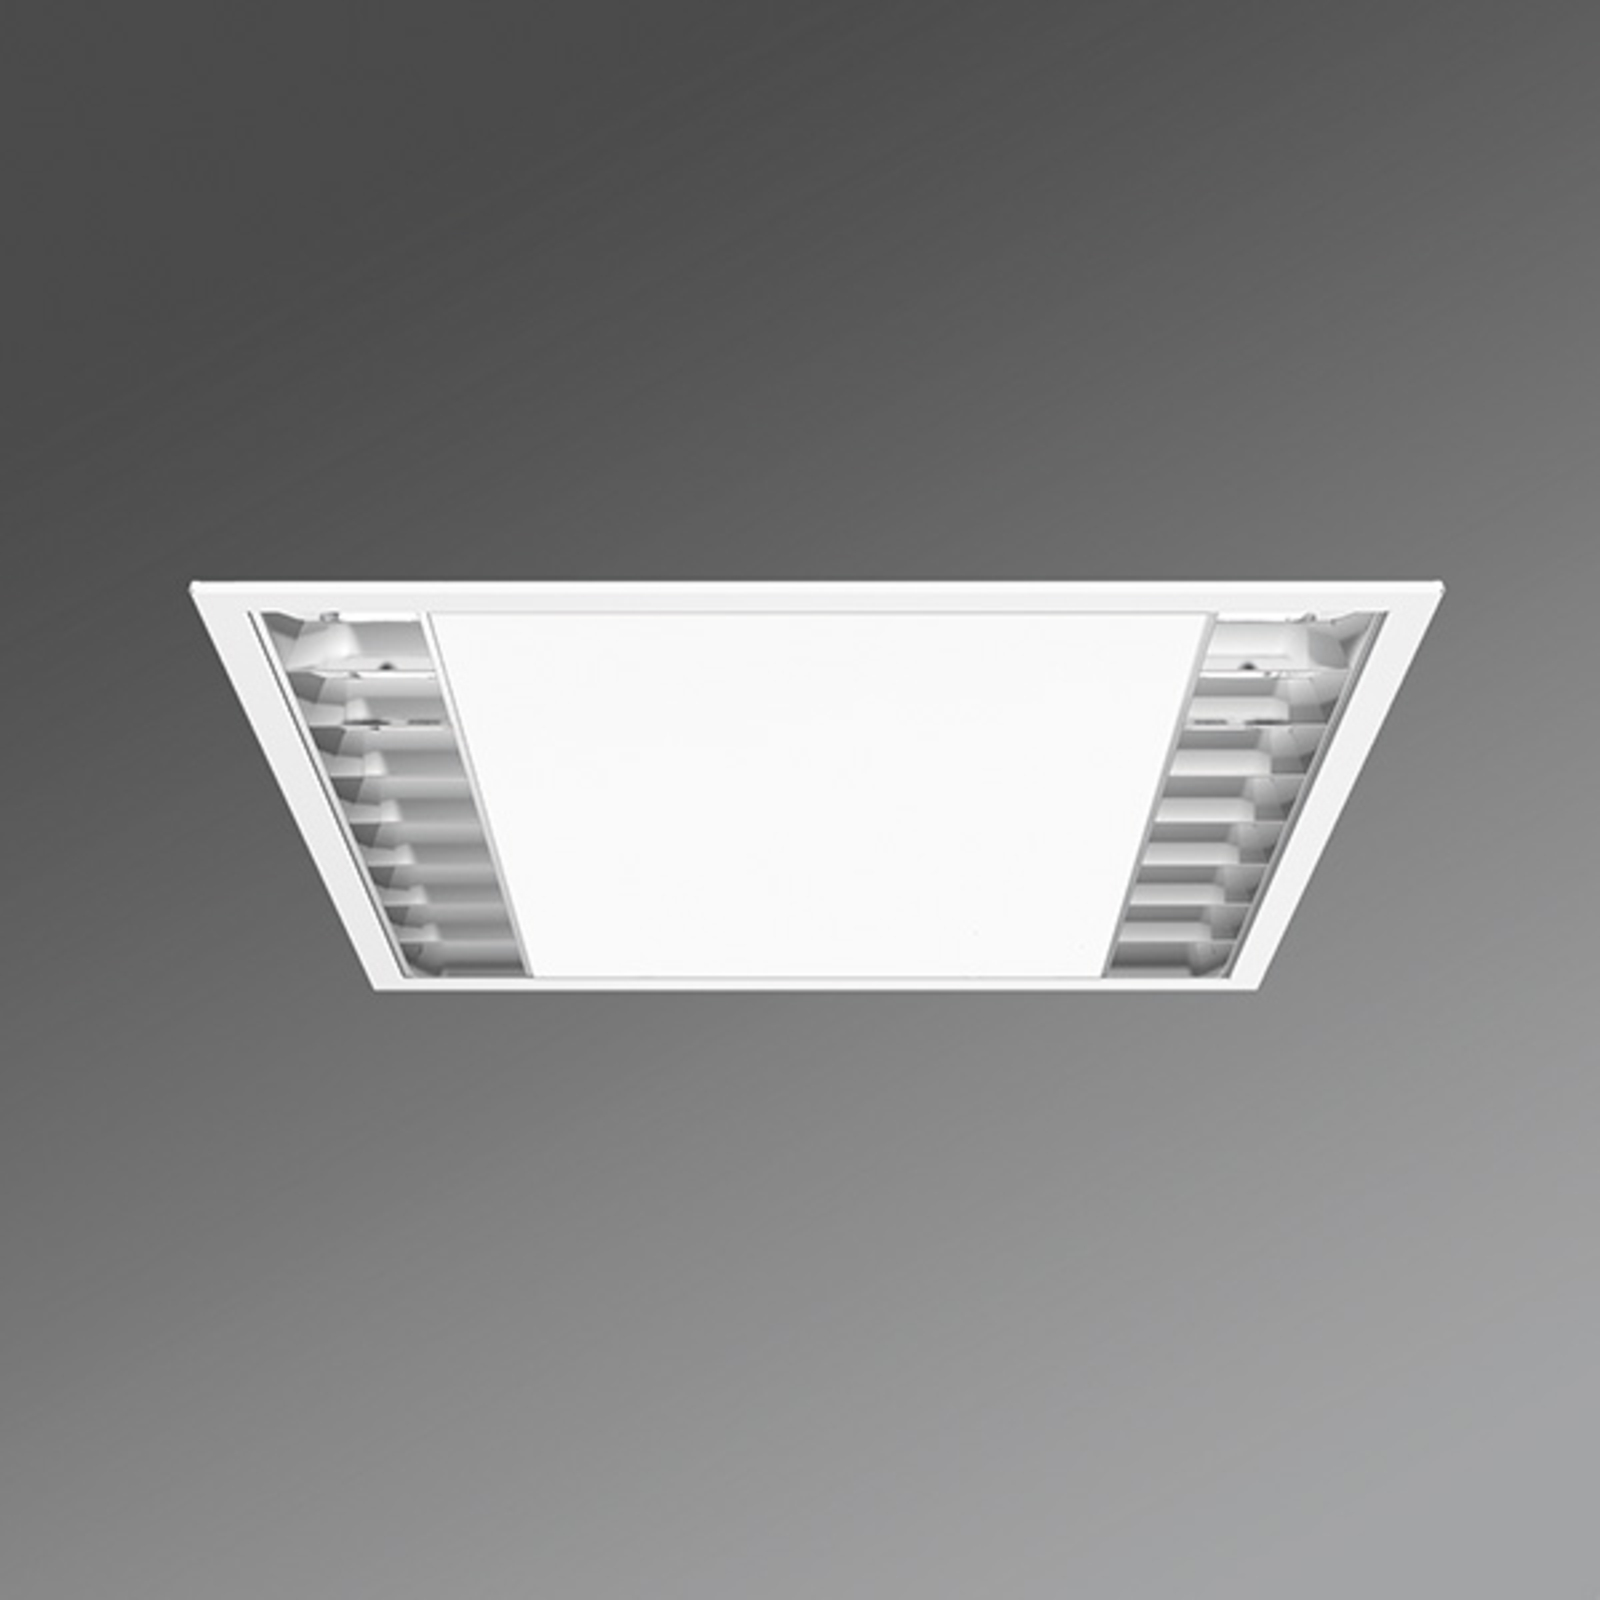 Biurowy downlight LED UEX/625 raster paraboliczny